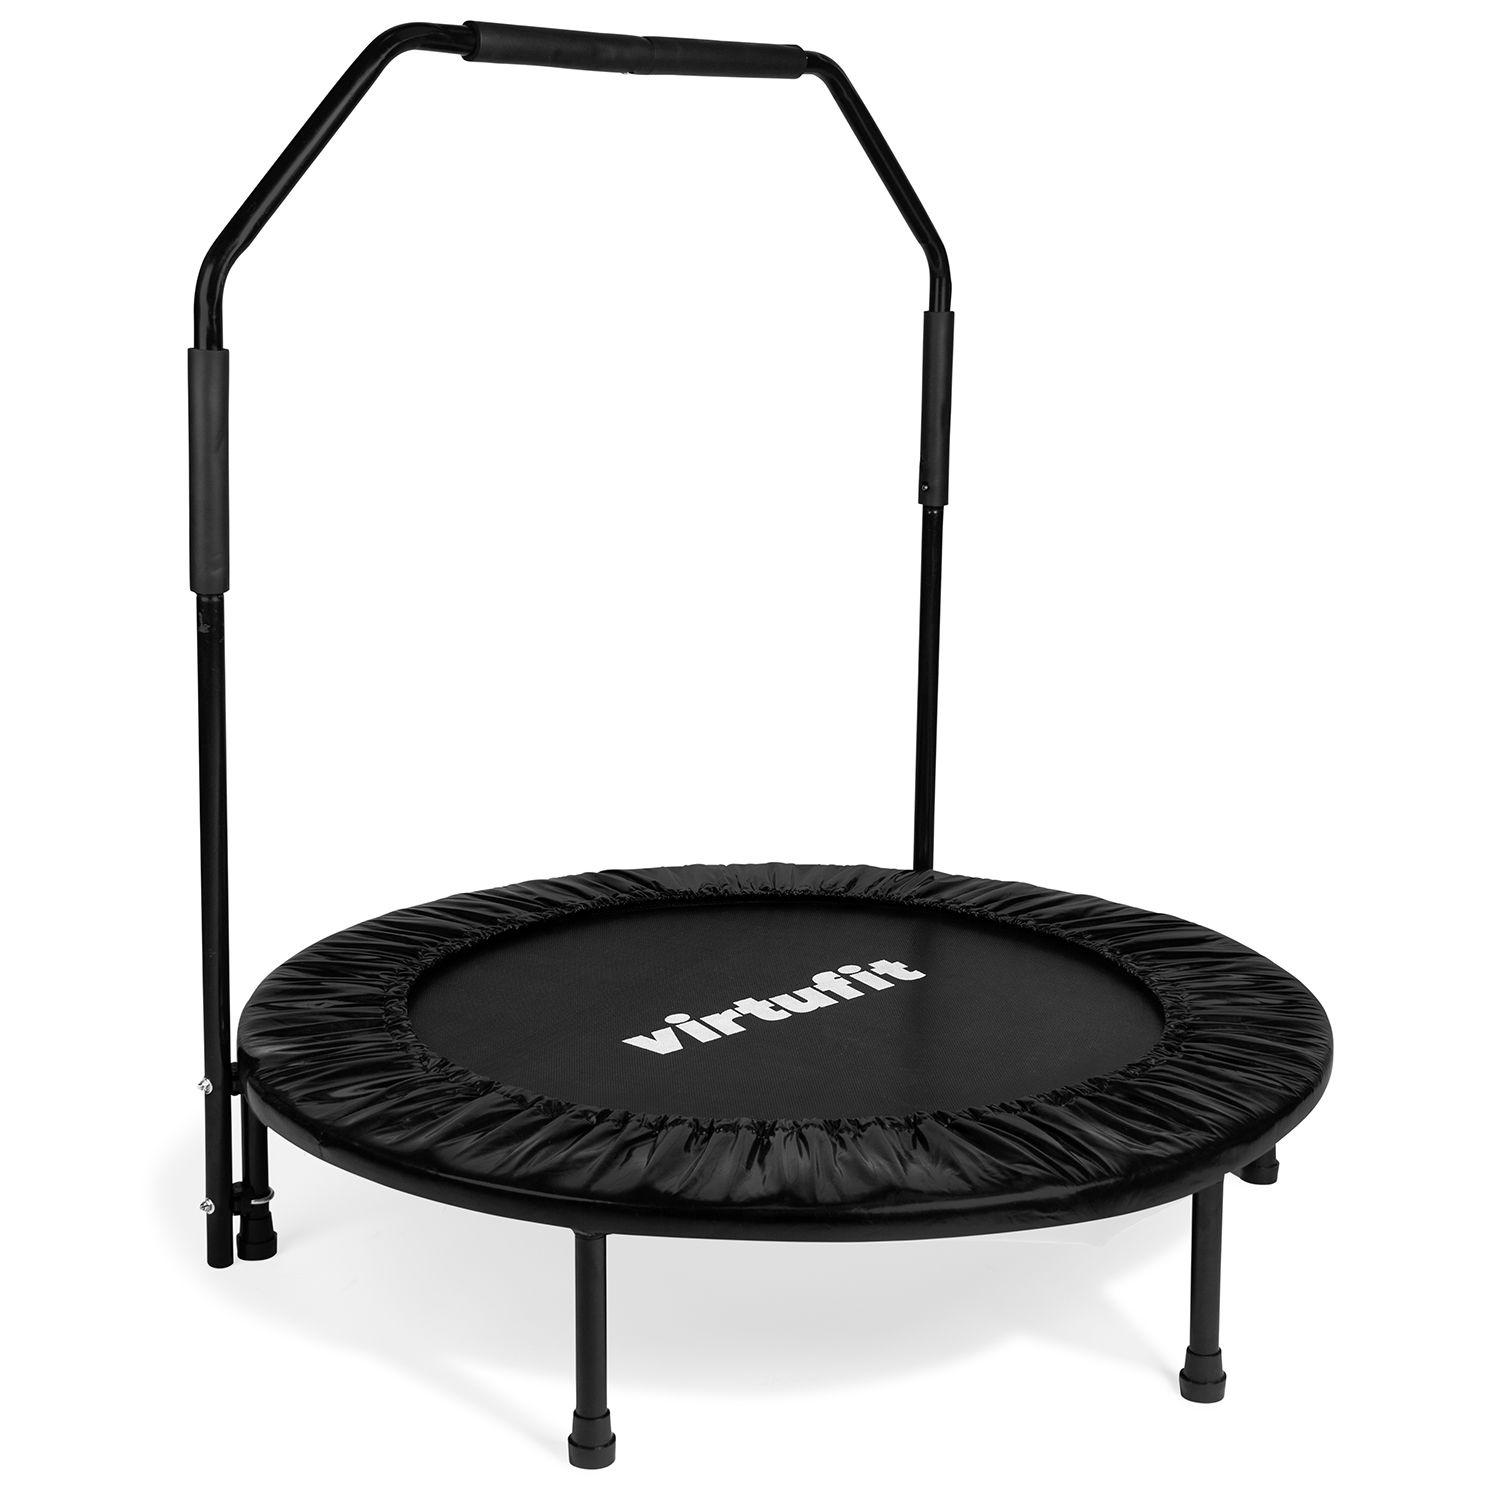 Parasiet geestelijke gezondheid grillen VirtuFit Opvouwbare Fitness Trampoline met Handvat - 100 cm - Virtufit